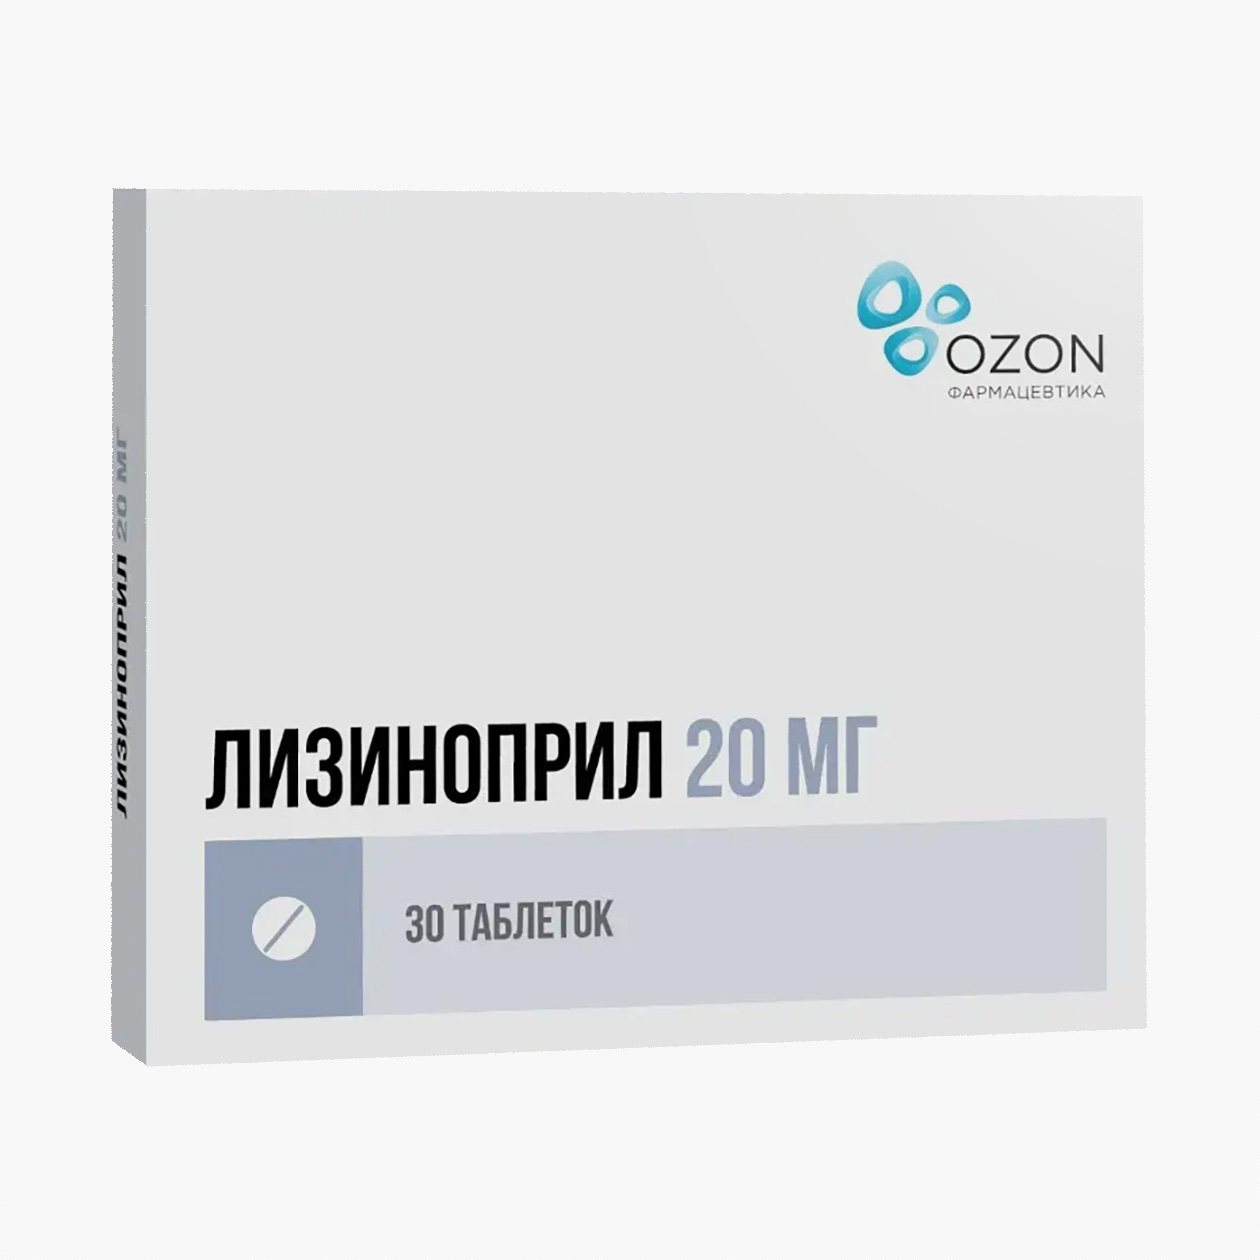 «Лизиноприл» от «Озона» по 20 мг